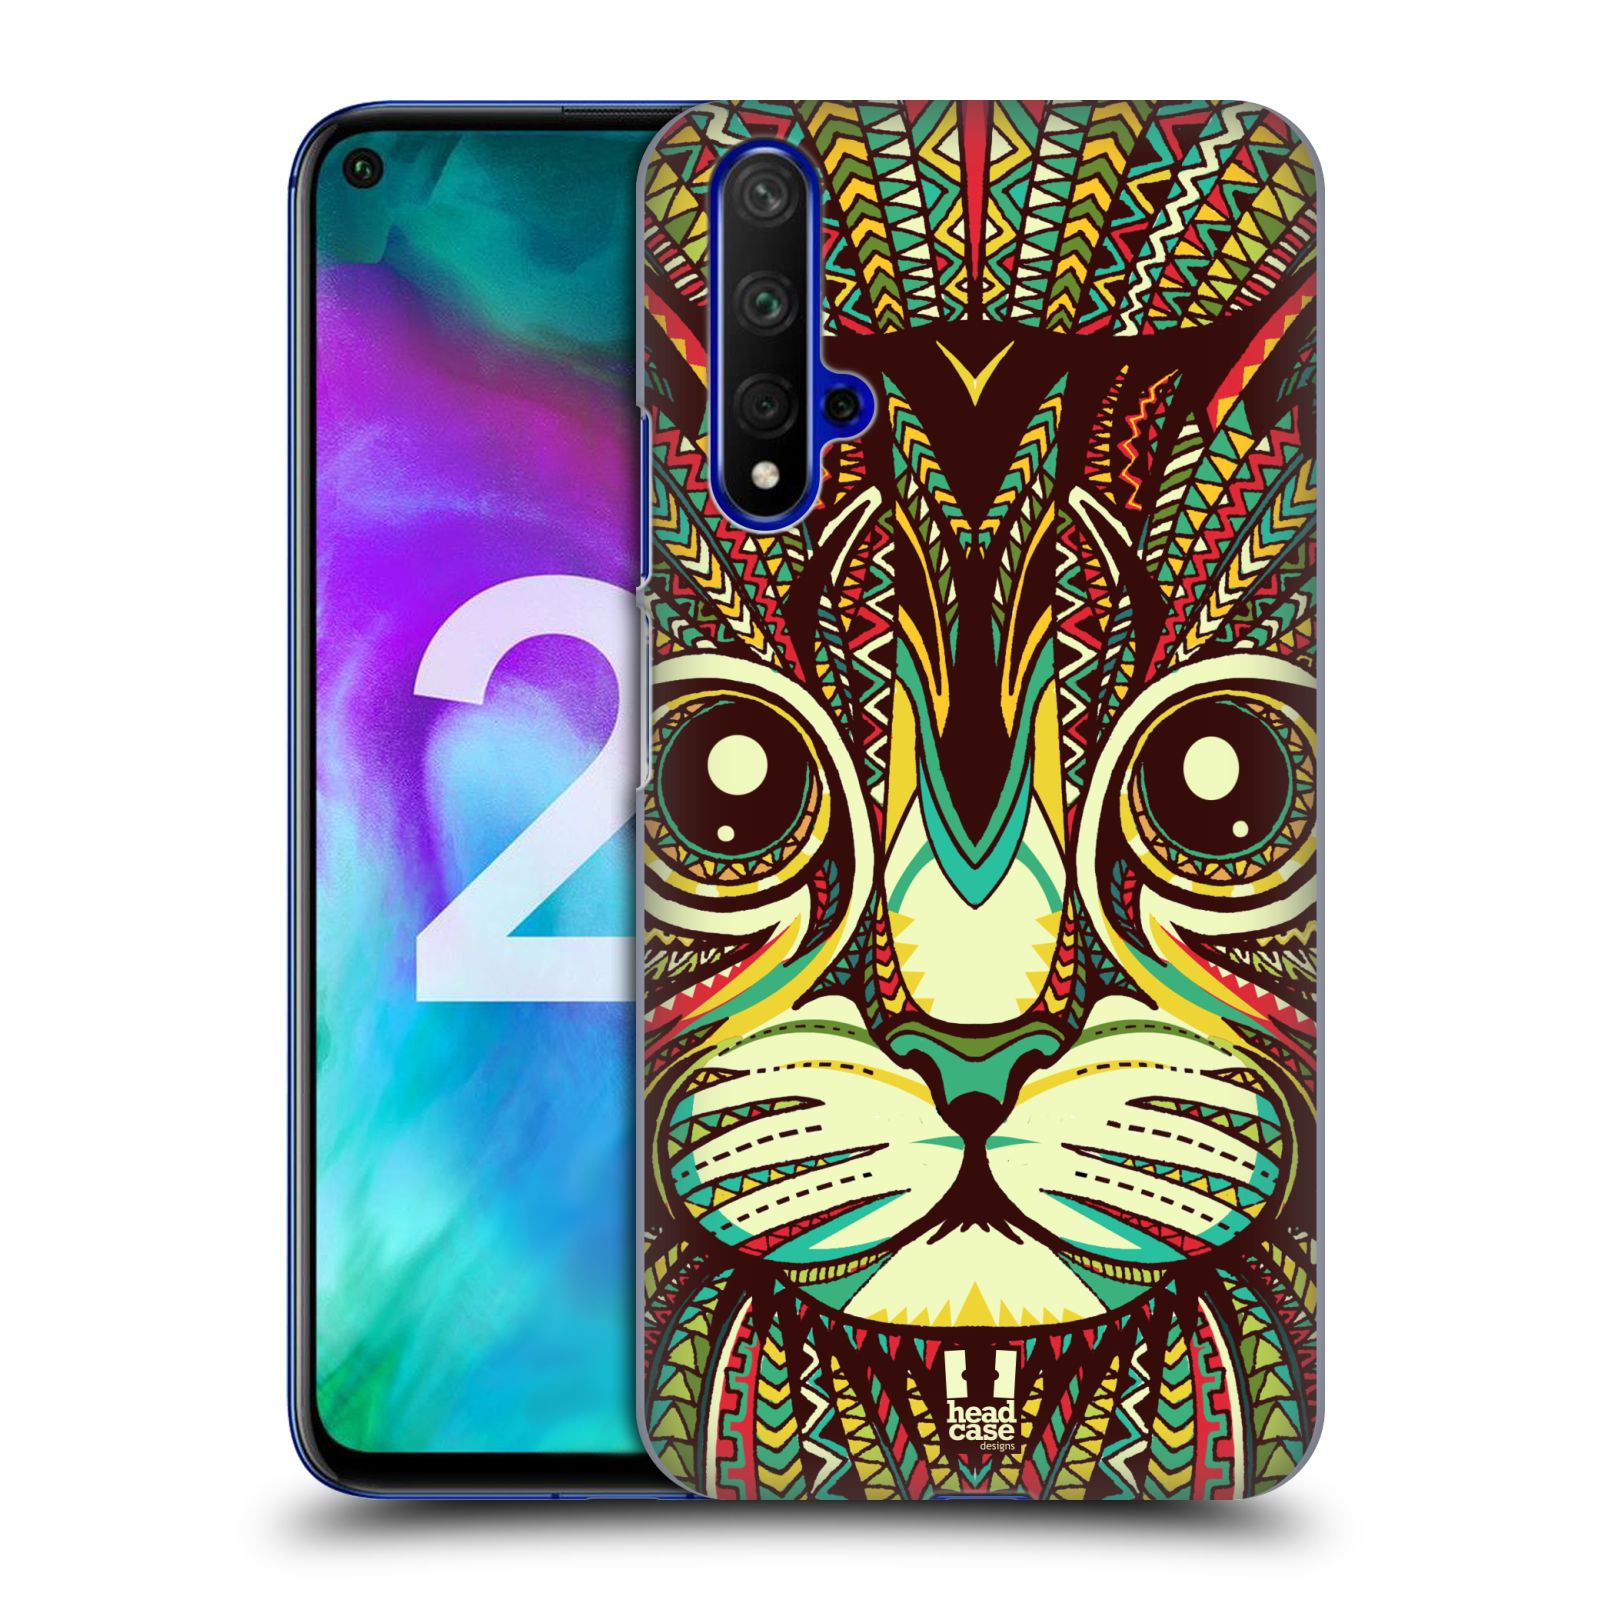 Pouzdro na mobil Honor 20 - HEAD CASE - vzor Aztécký motiv zvíře 2 kotě